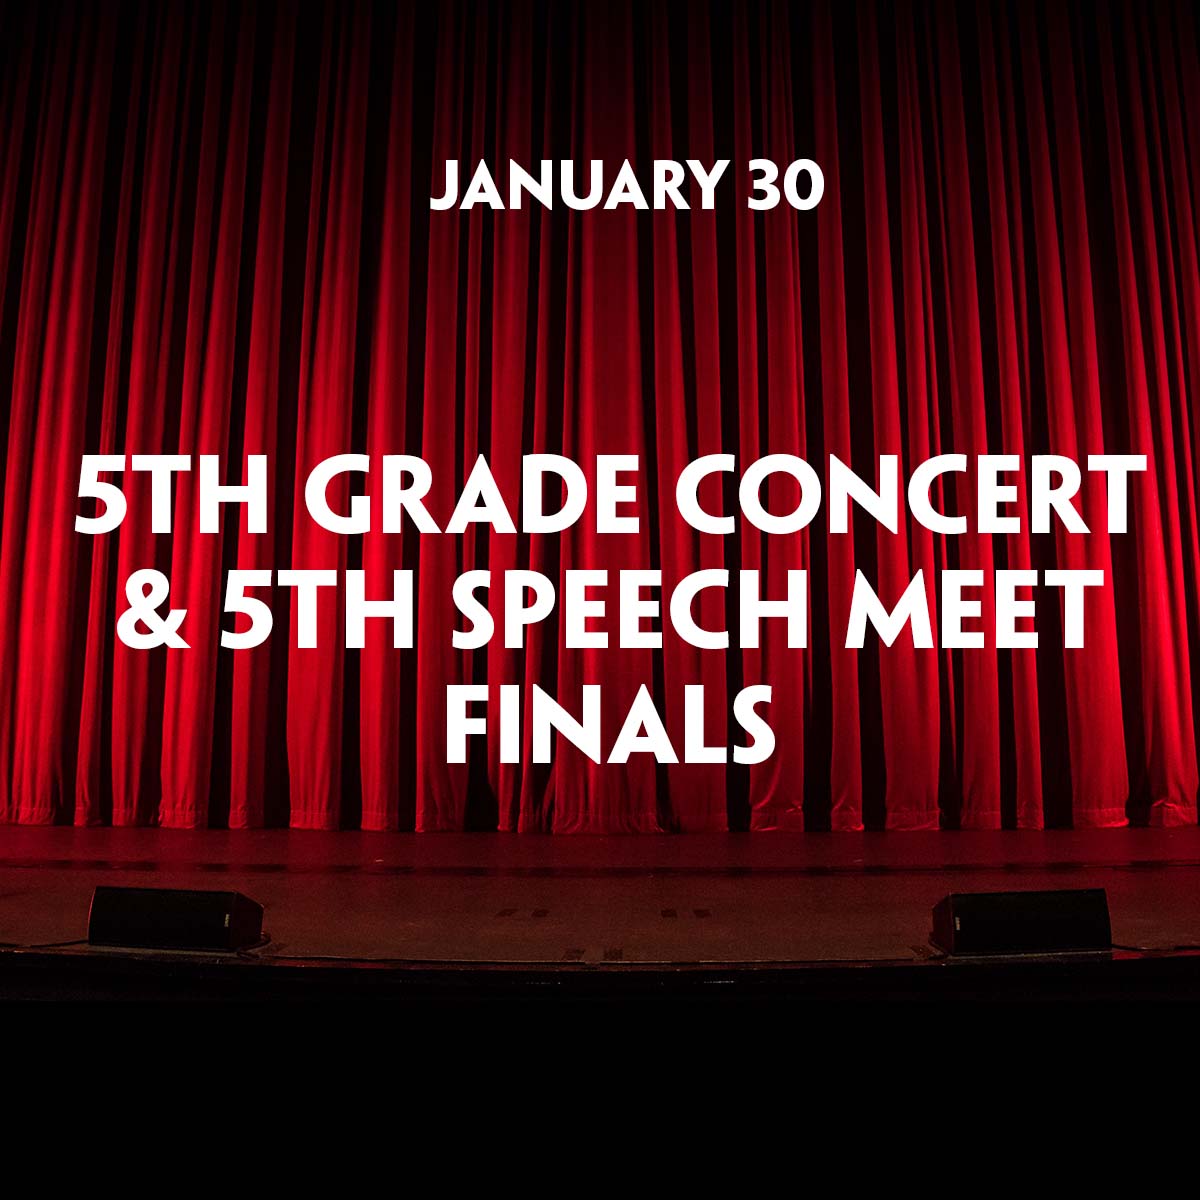 5th Grade Concert & Speech Meet Finals